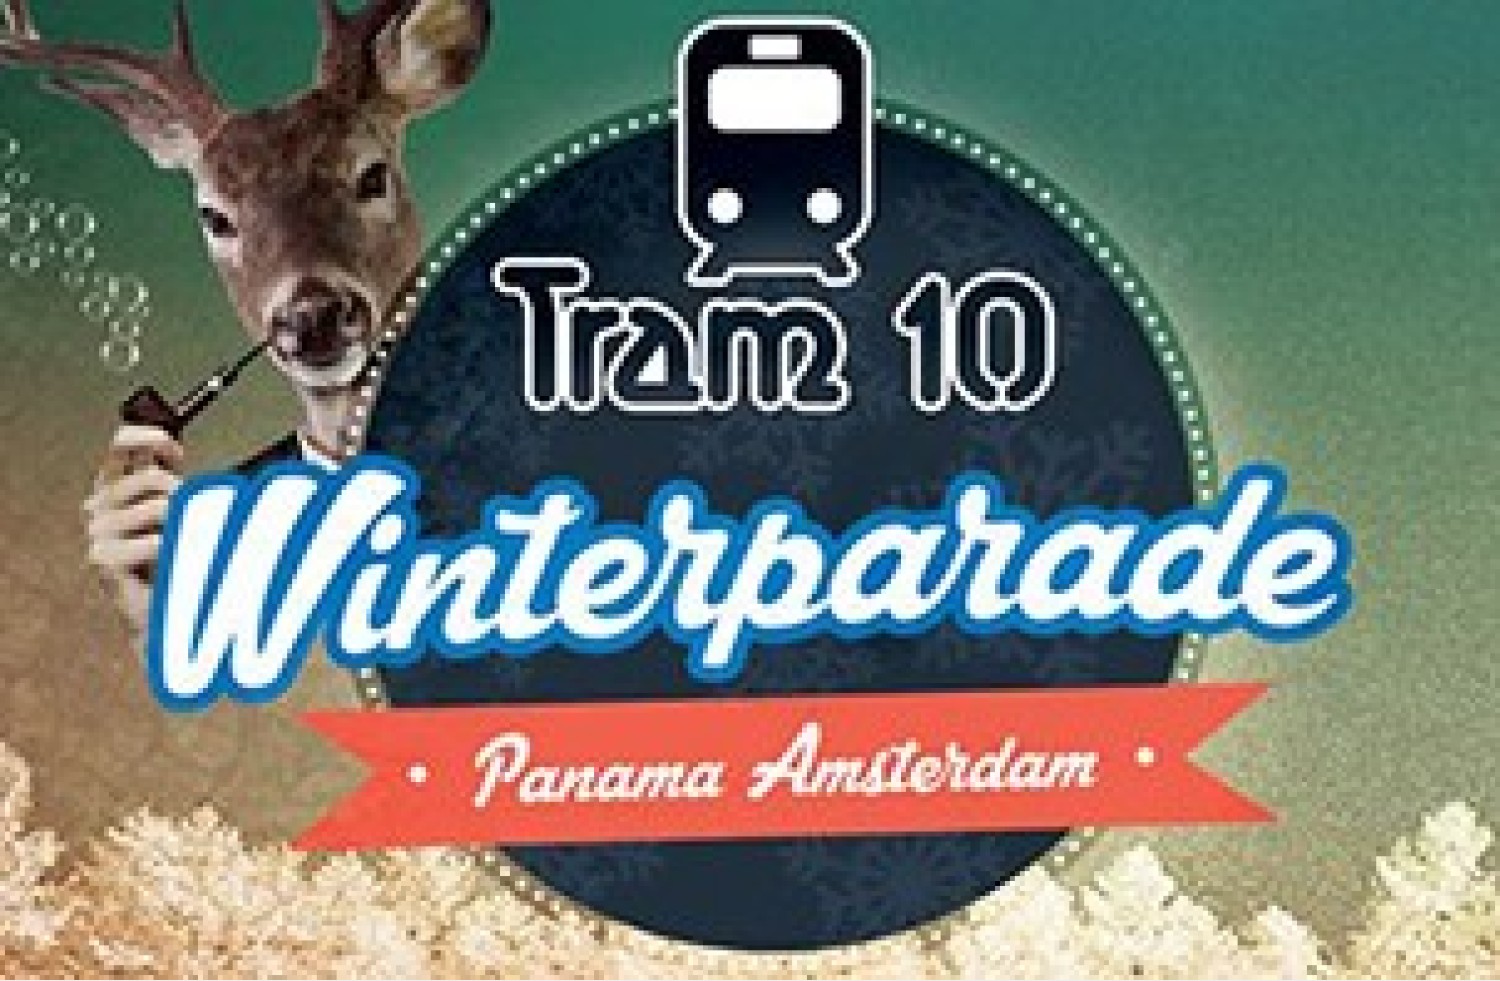 Party nieuws: Tram 10 kondigt de Winterparade aan!